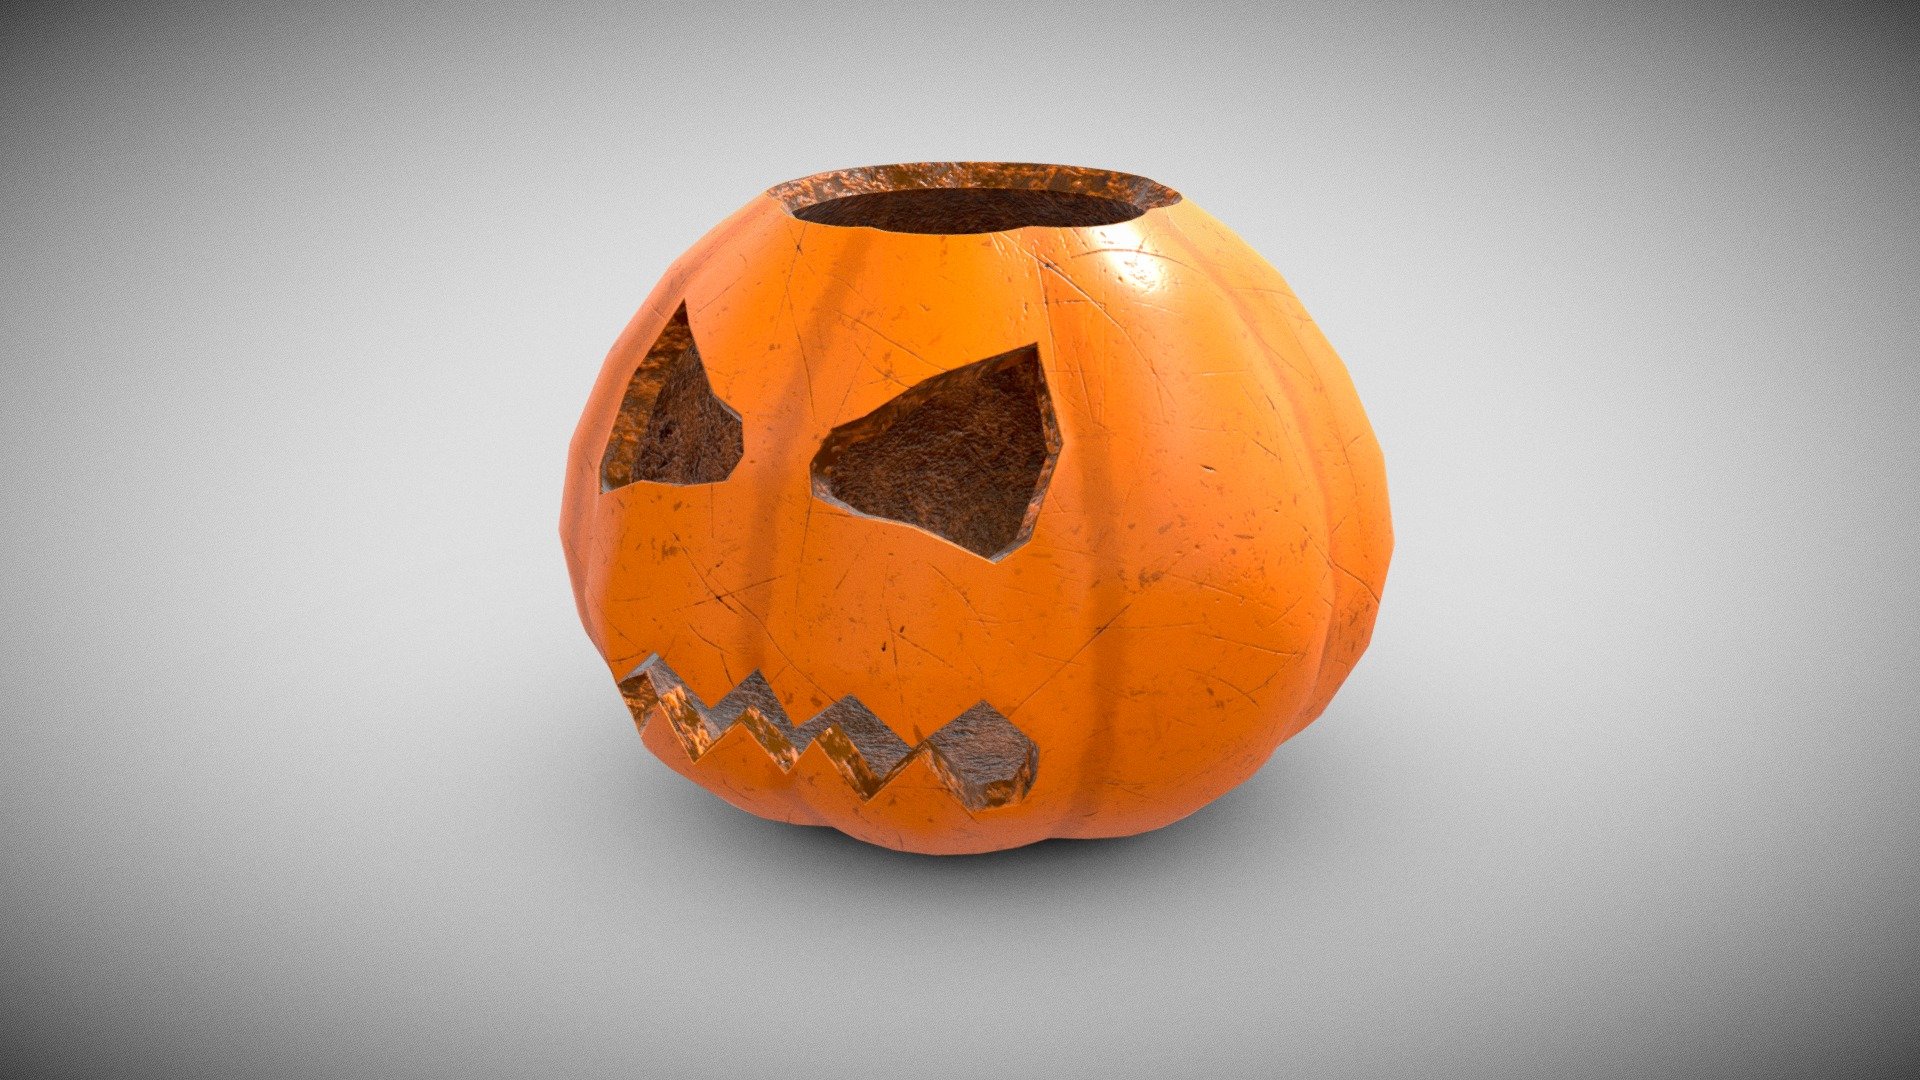 Spooky Pumpkin